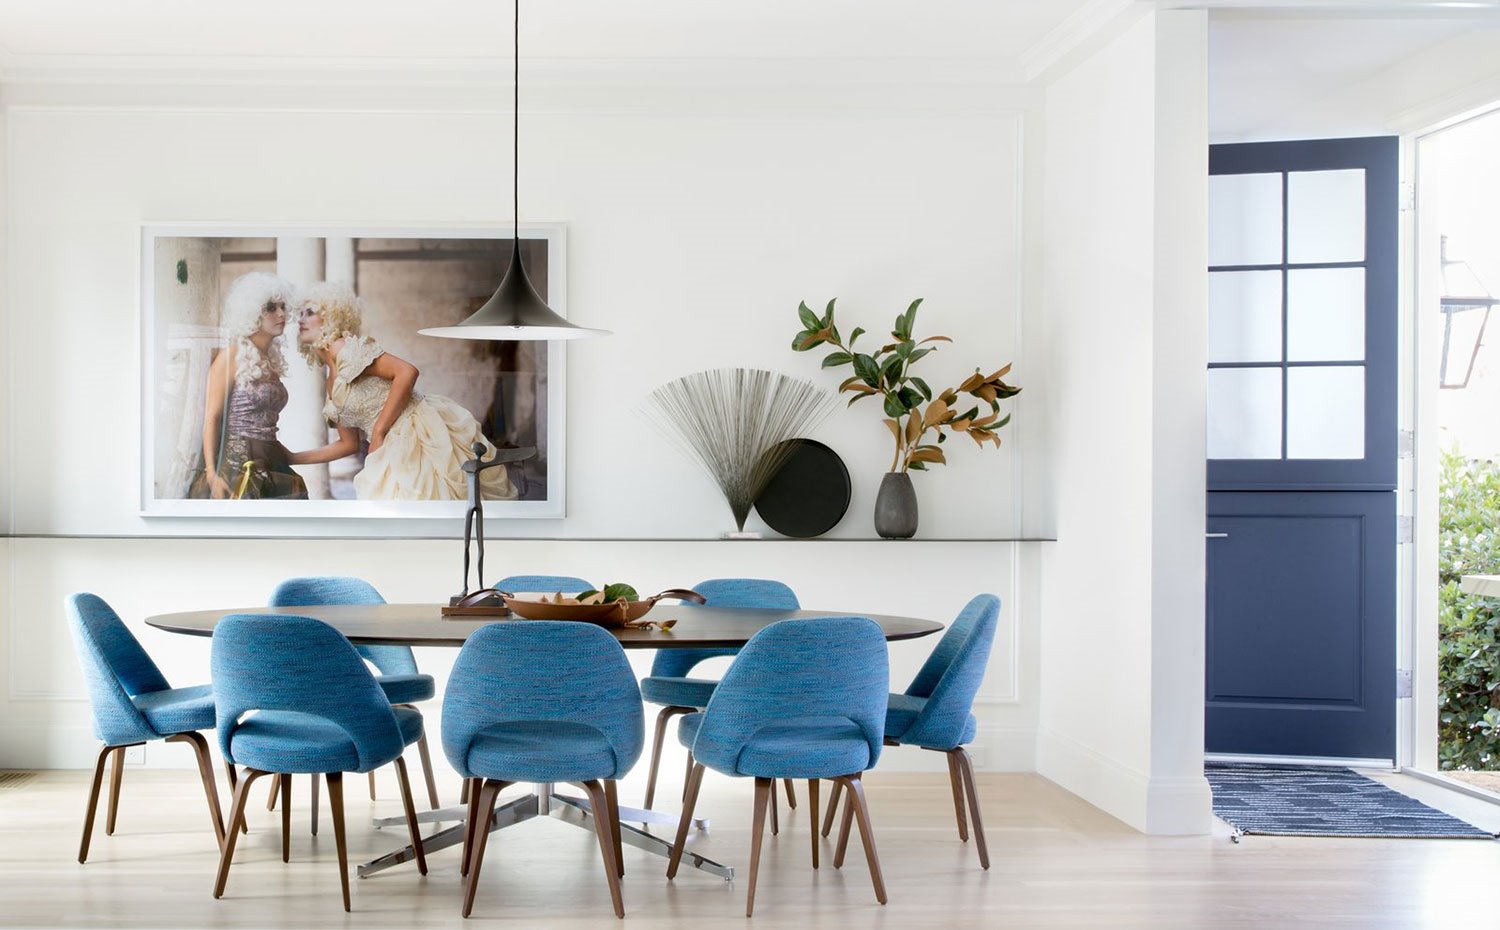 Comedor mesa de madera ovalada, sillas tapizadas en azul, escultura centro de mesa, balda con jarrones y elementos decorativos, cuadro de inspiración victoriana, puerta azul